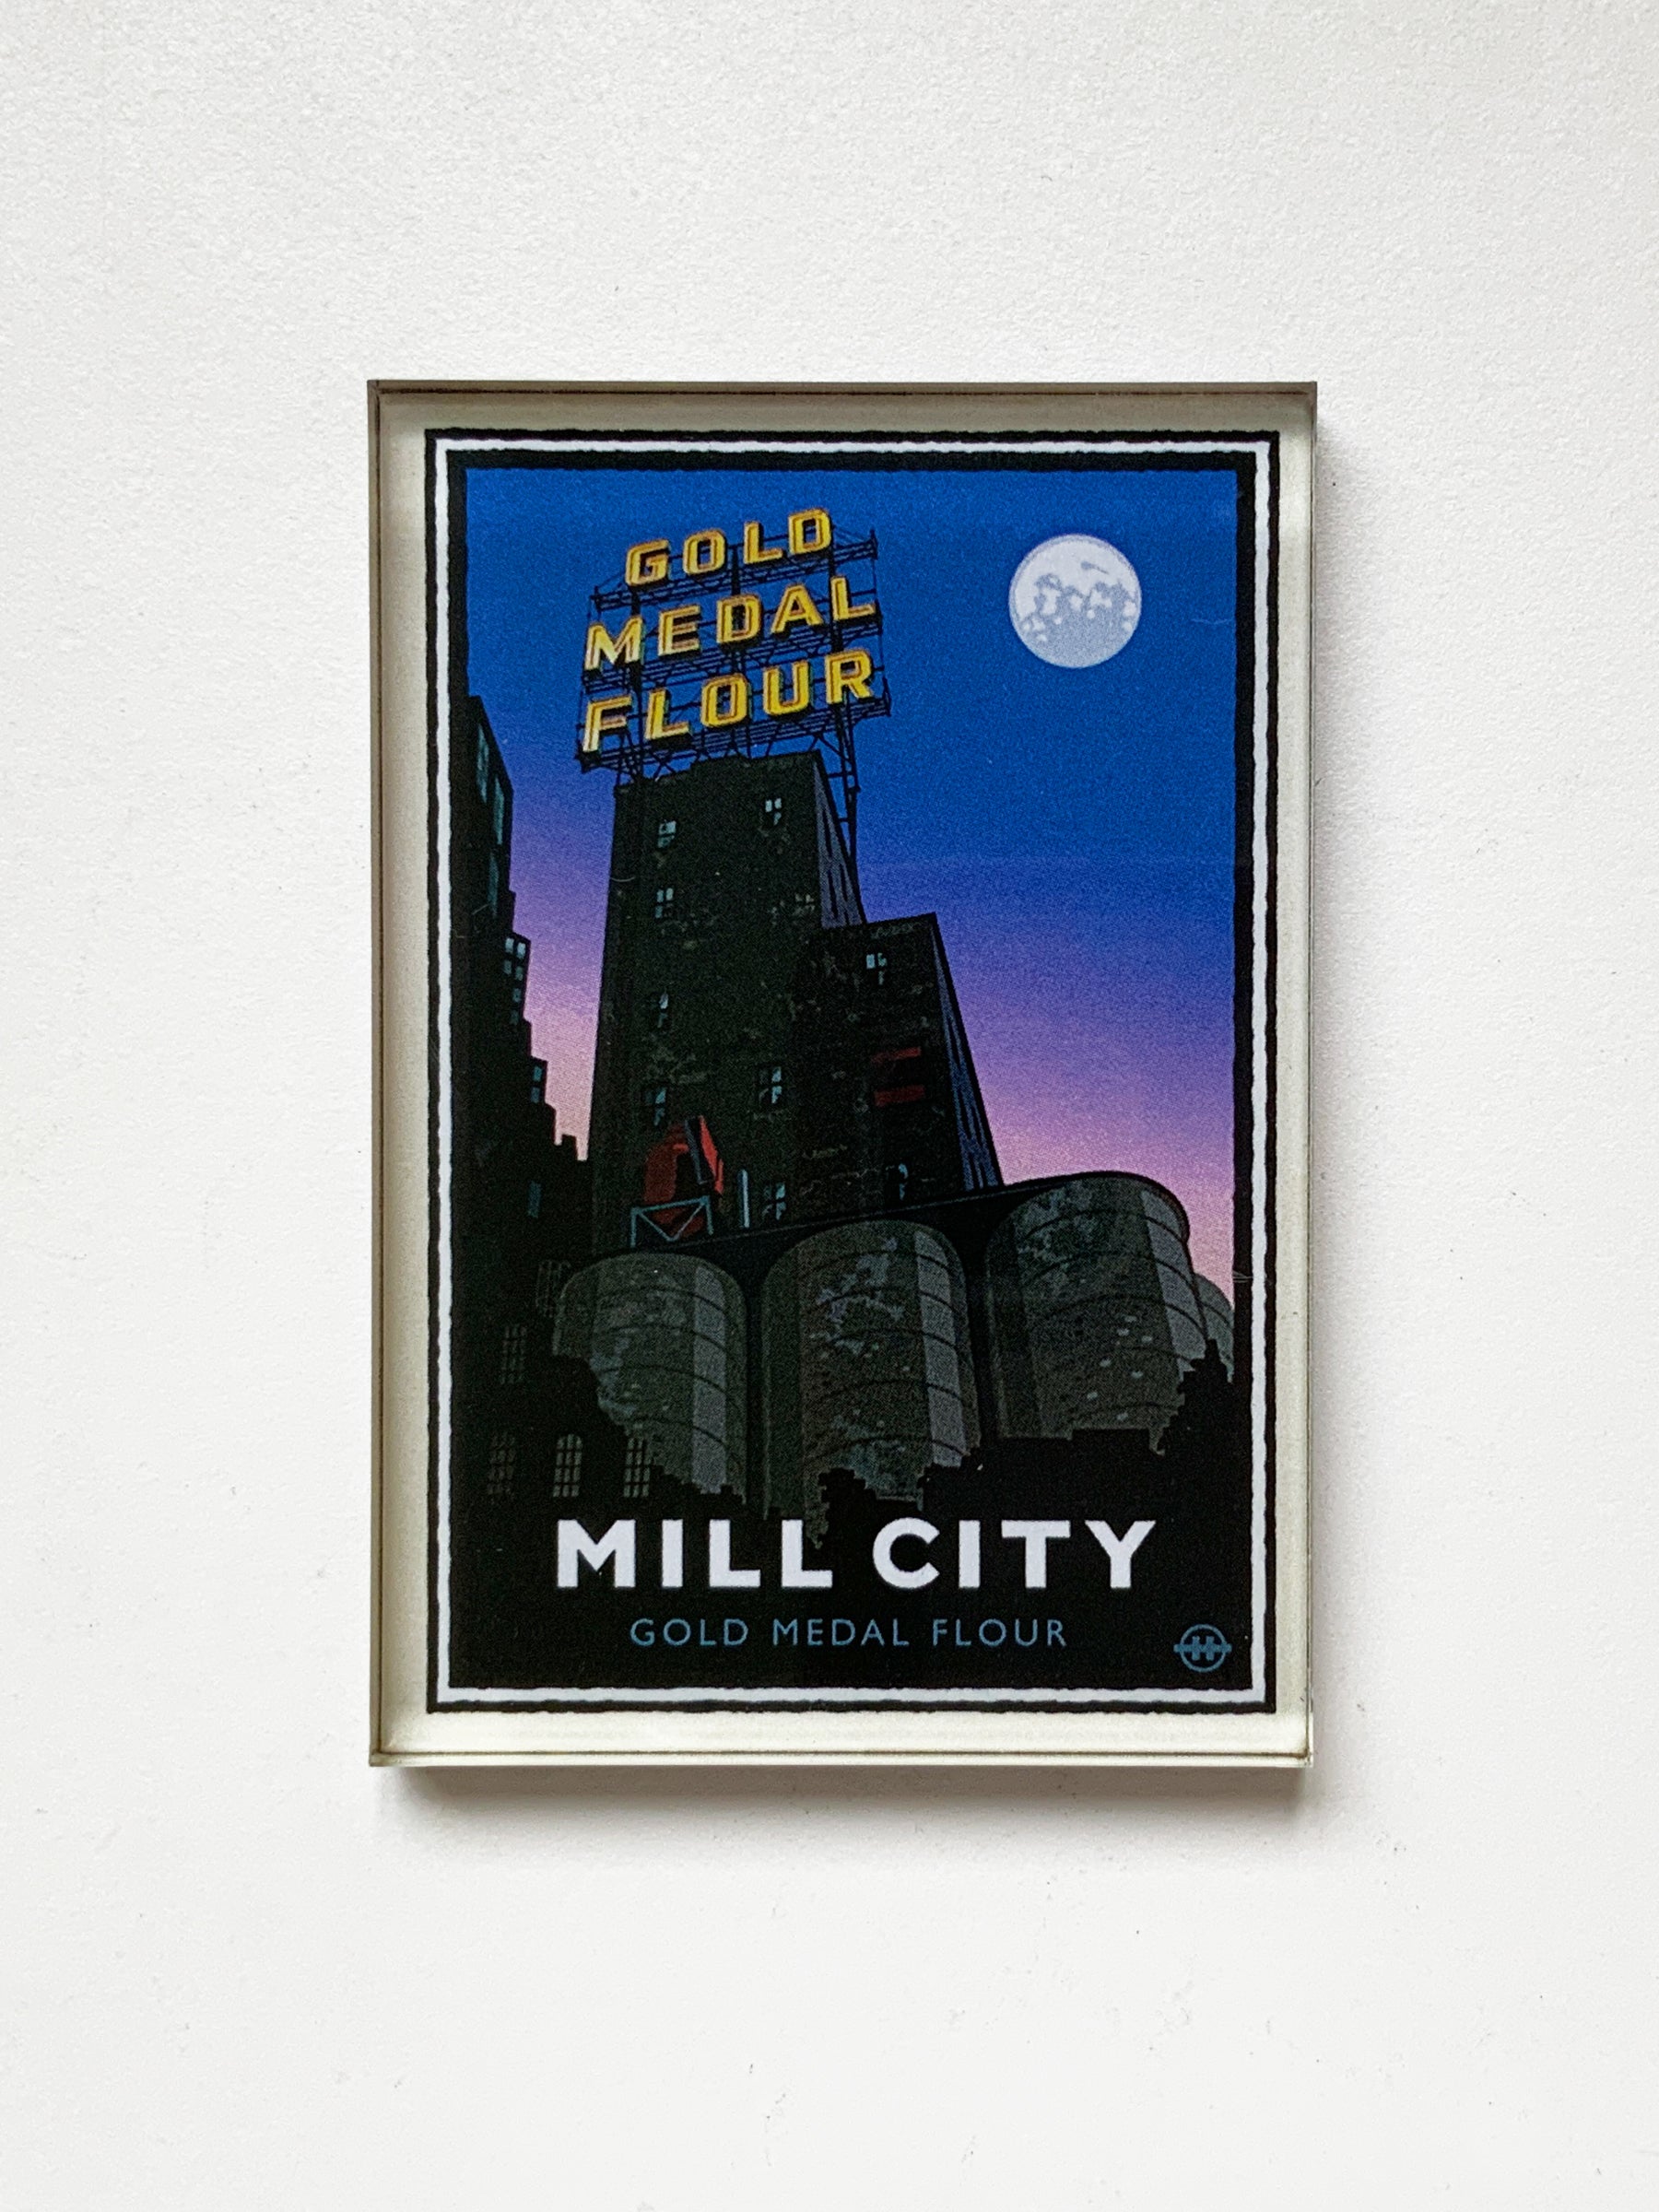 Landmark MN | Mill City Magnet